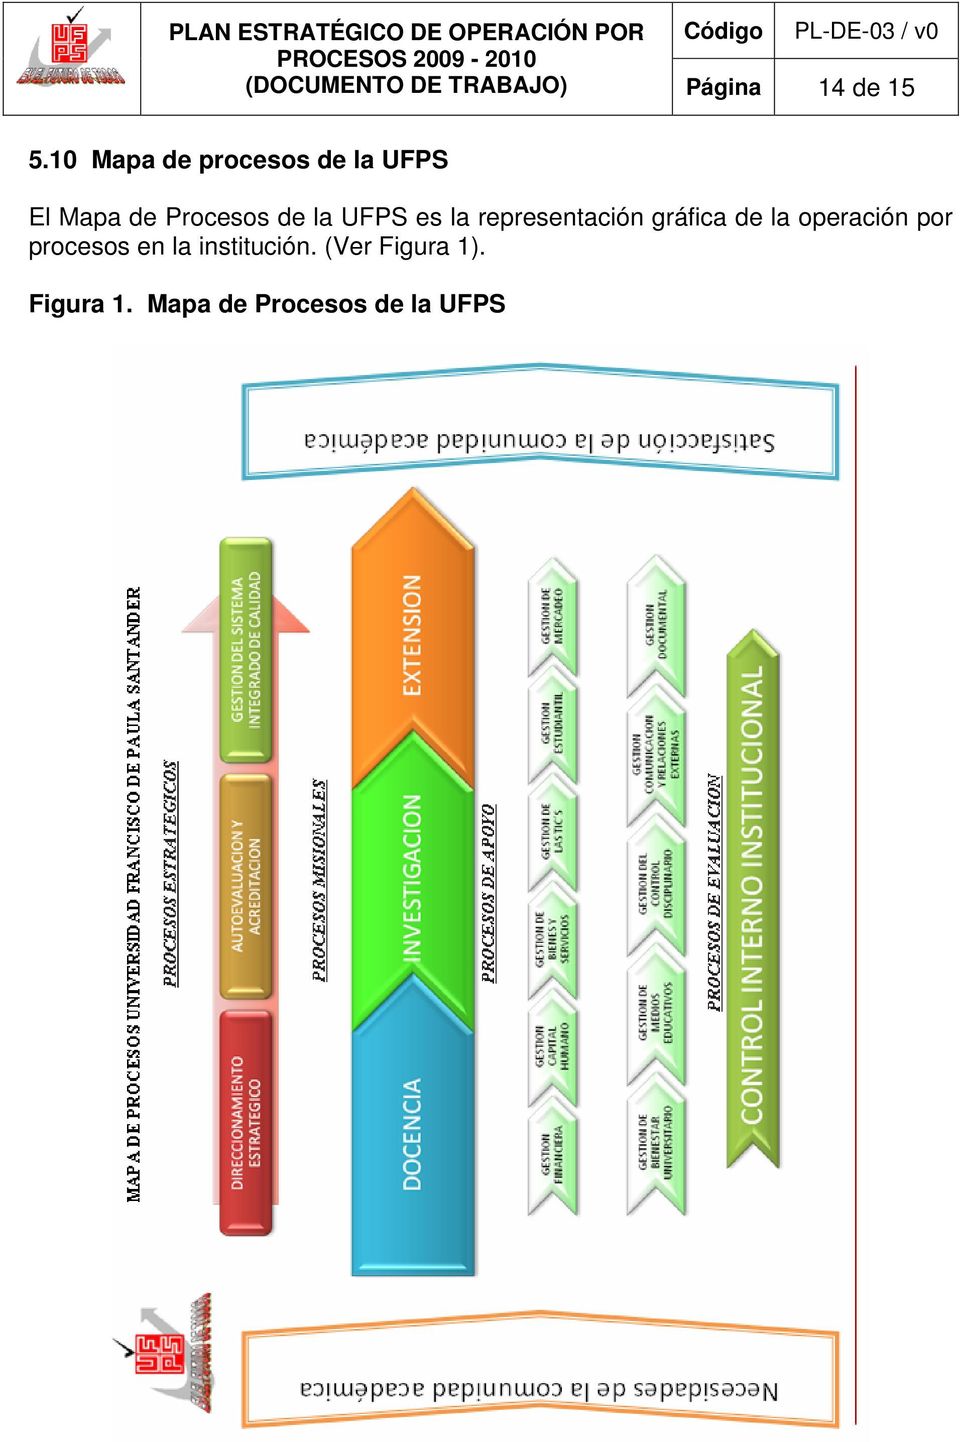 UFPS es la representación gráfica de la operación por